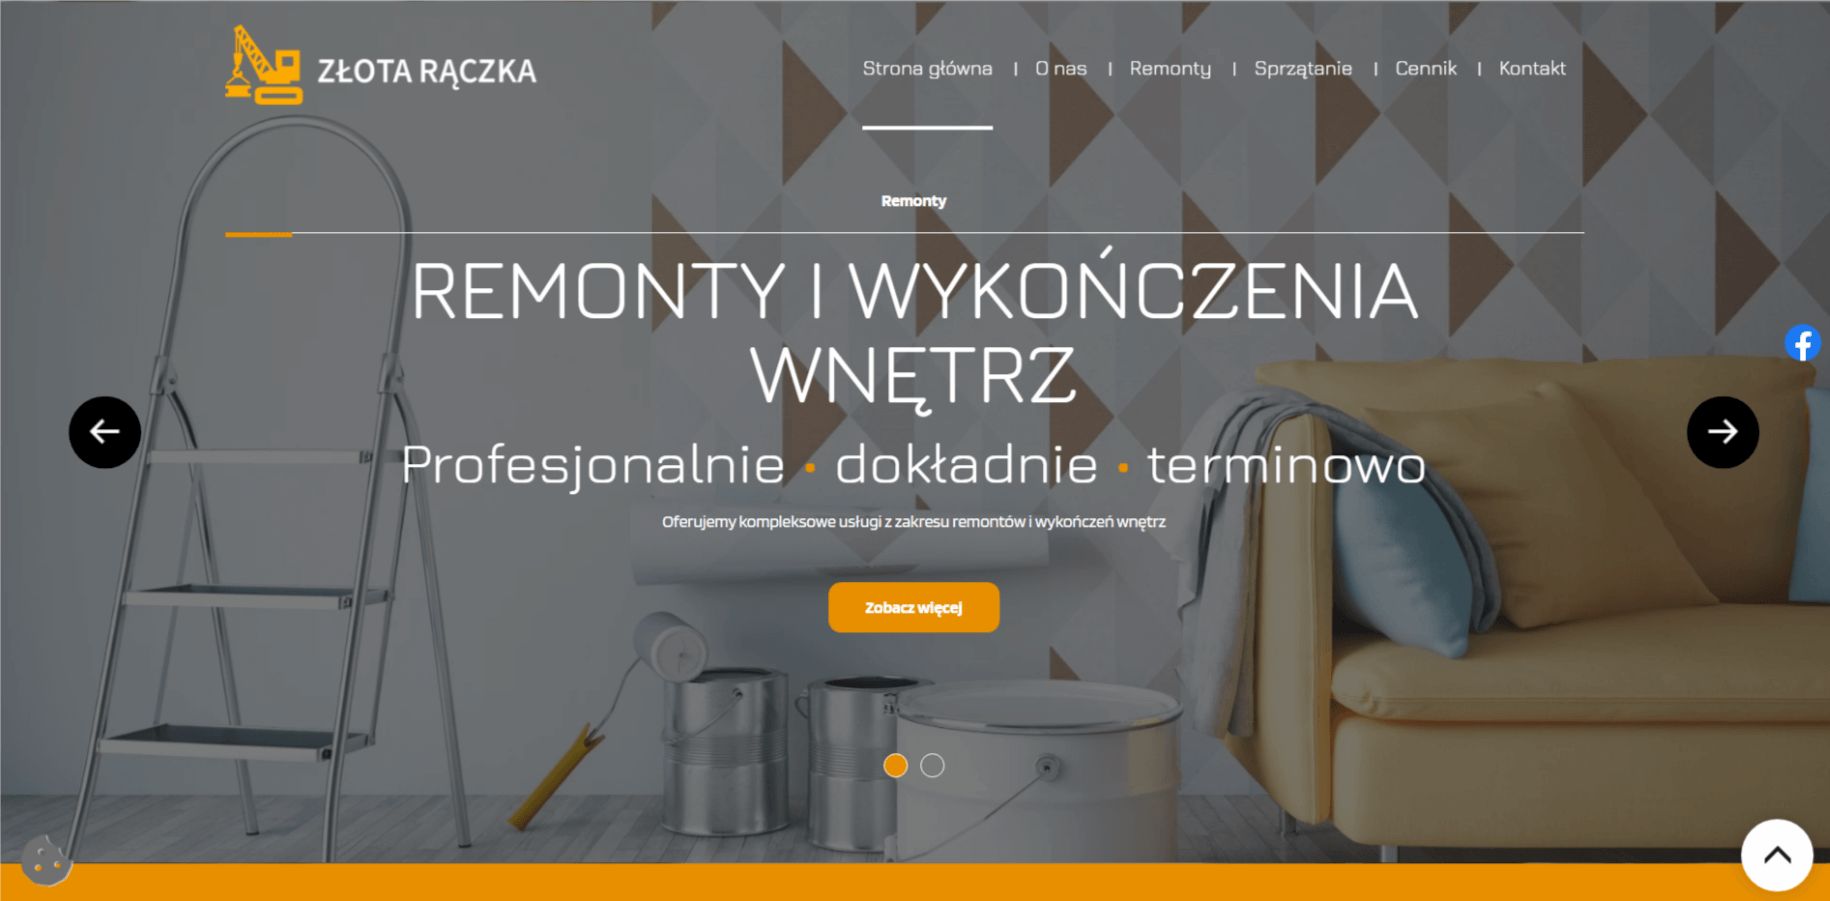 wenet_blog_zlota_raczka